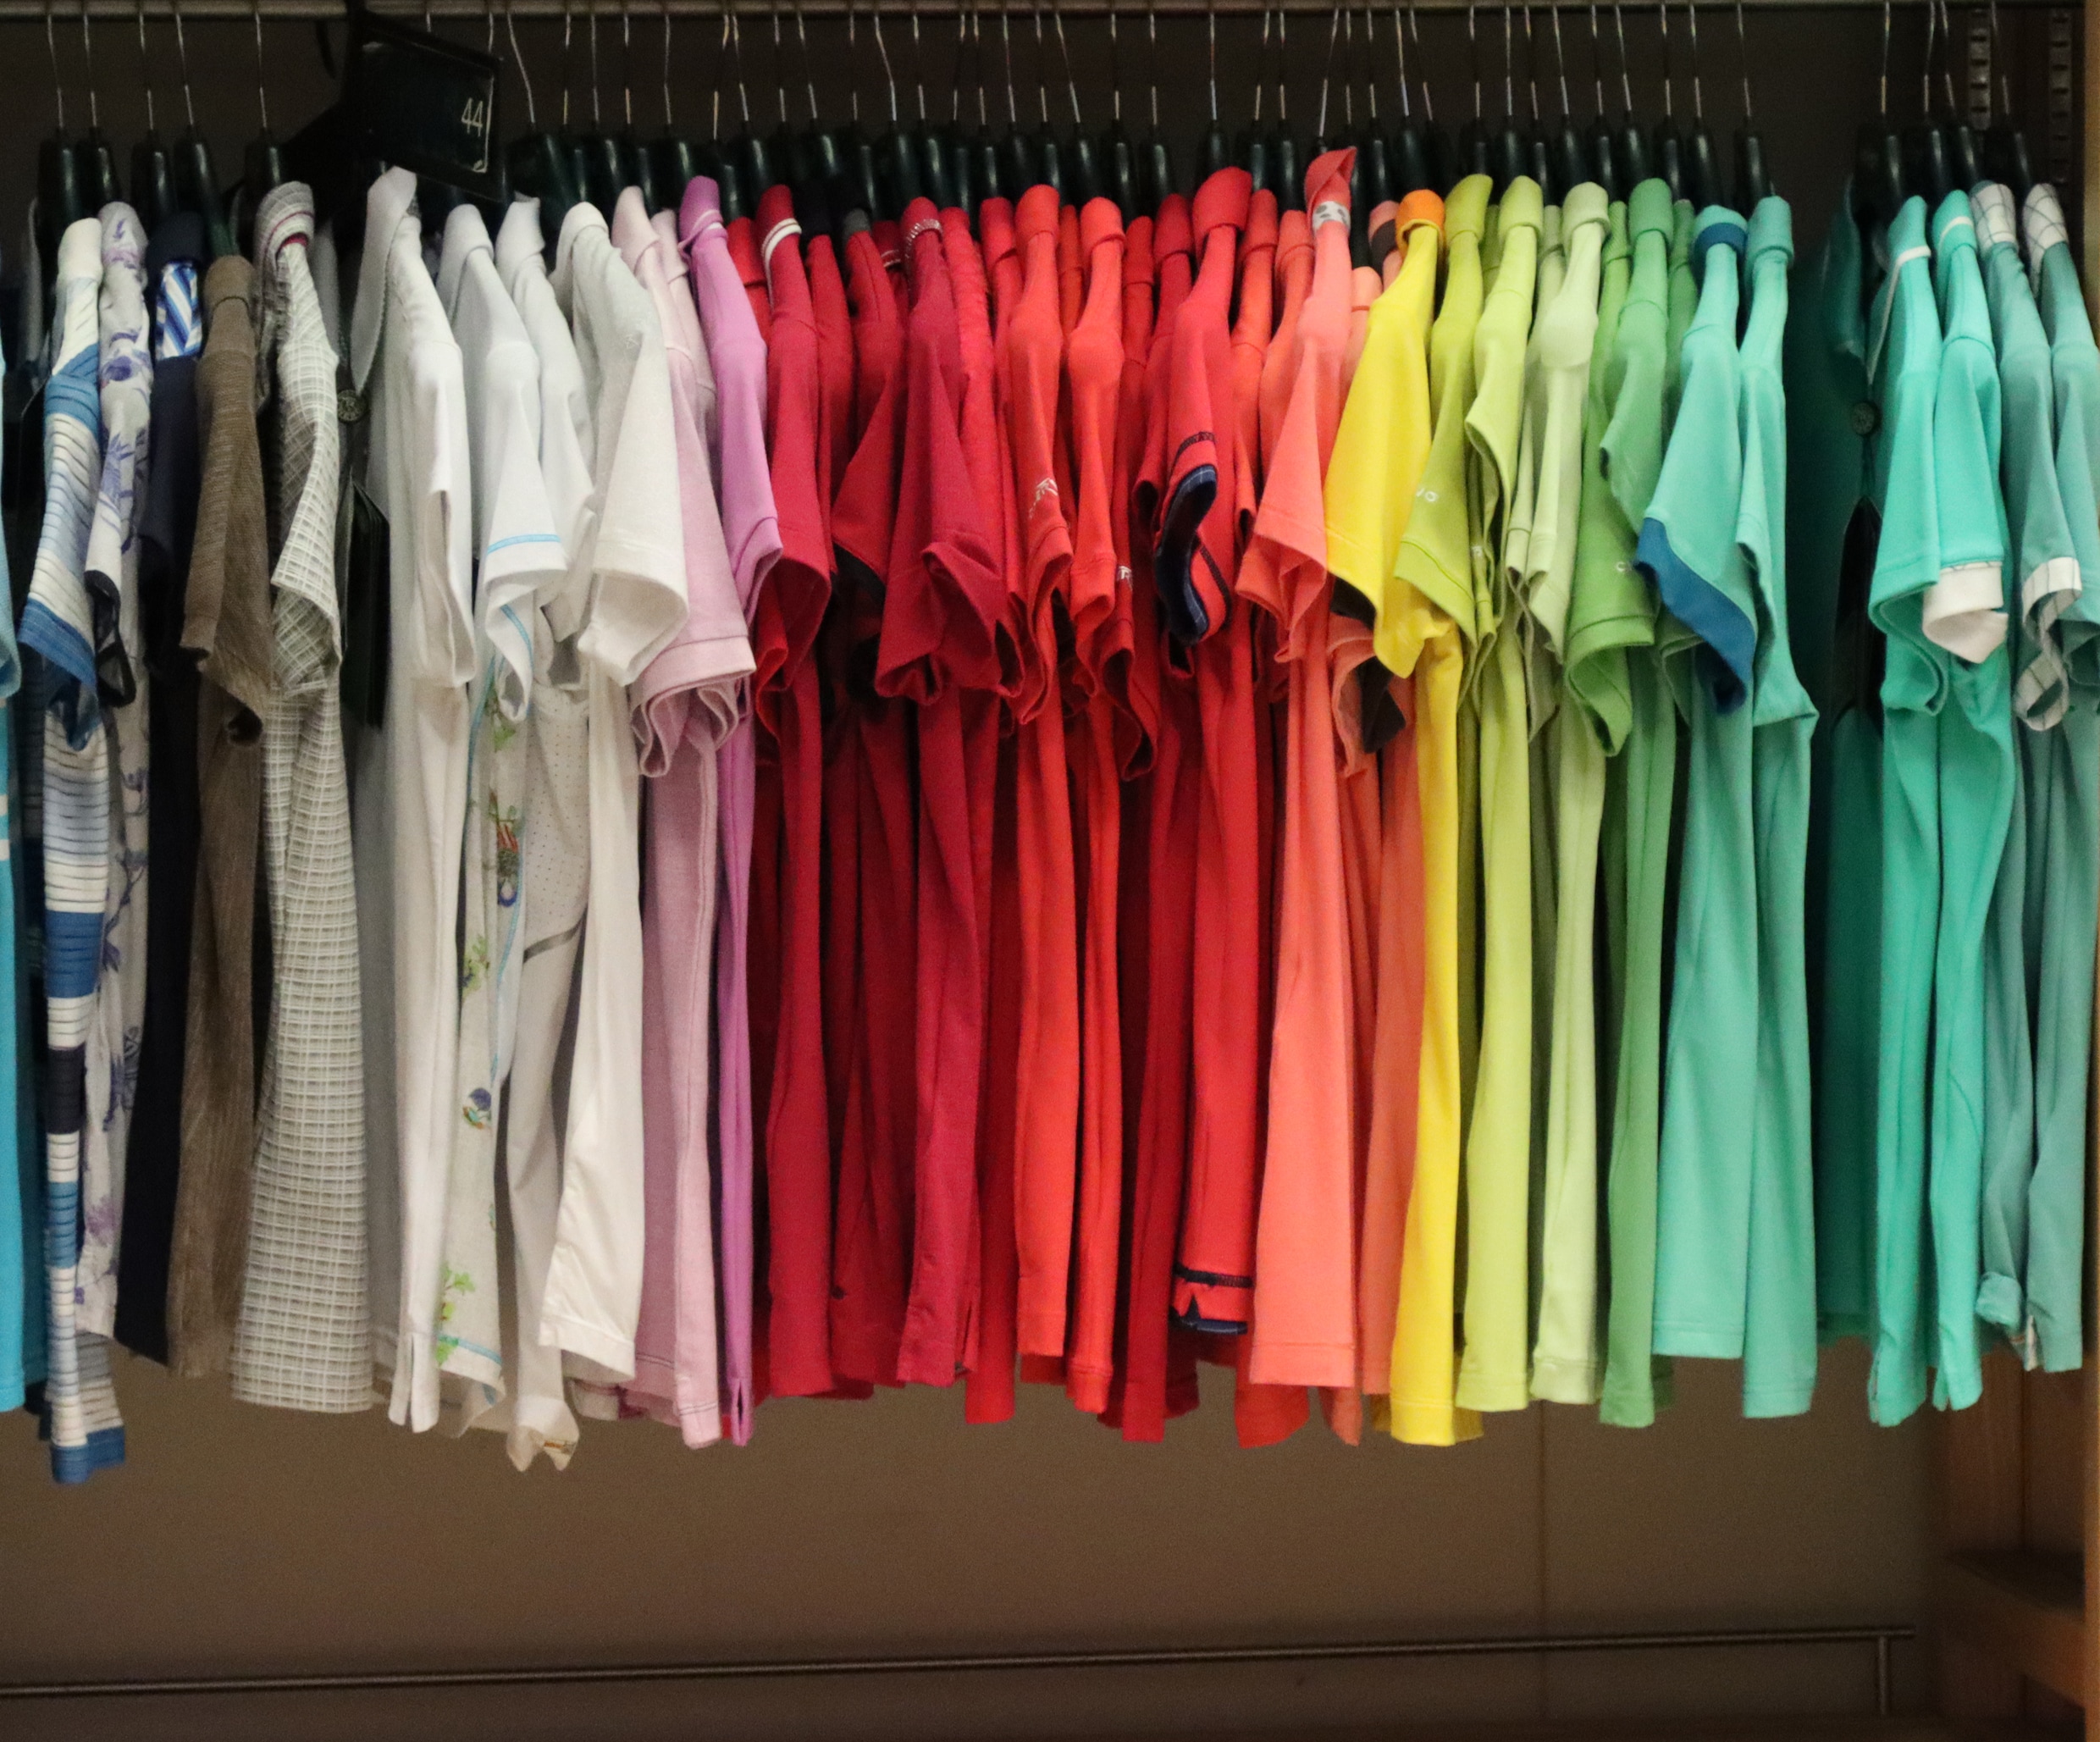 We kopen steeds minder kleding: sinds corona is één op de tien kledingwinkels ermee gestopt